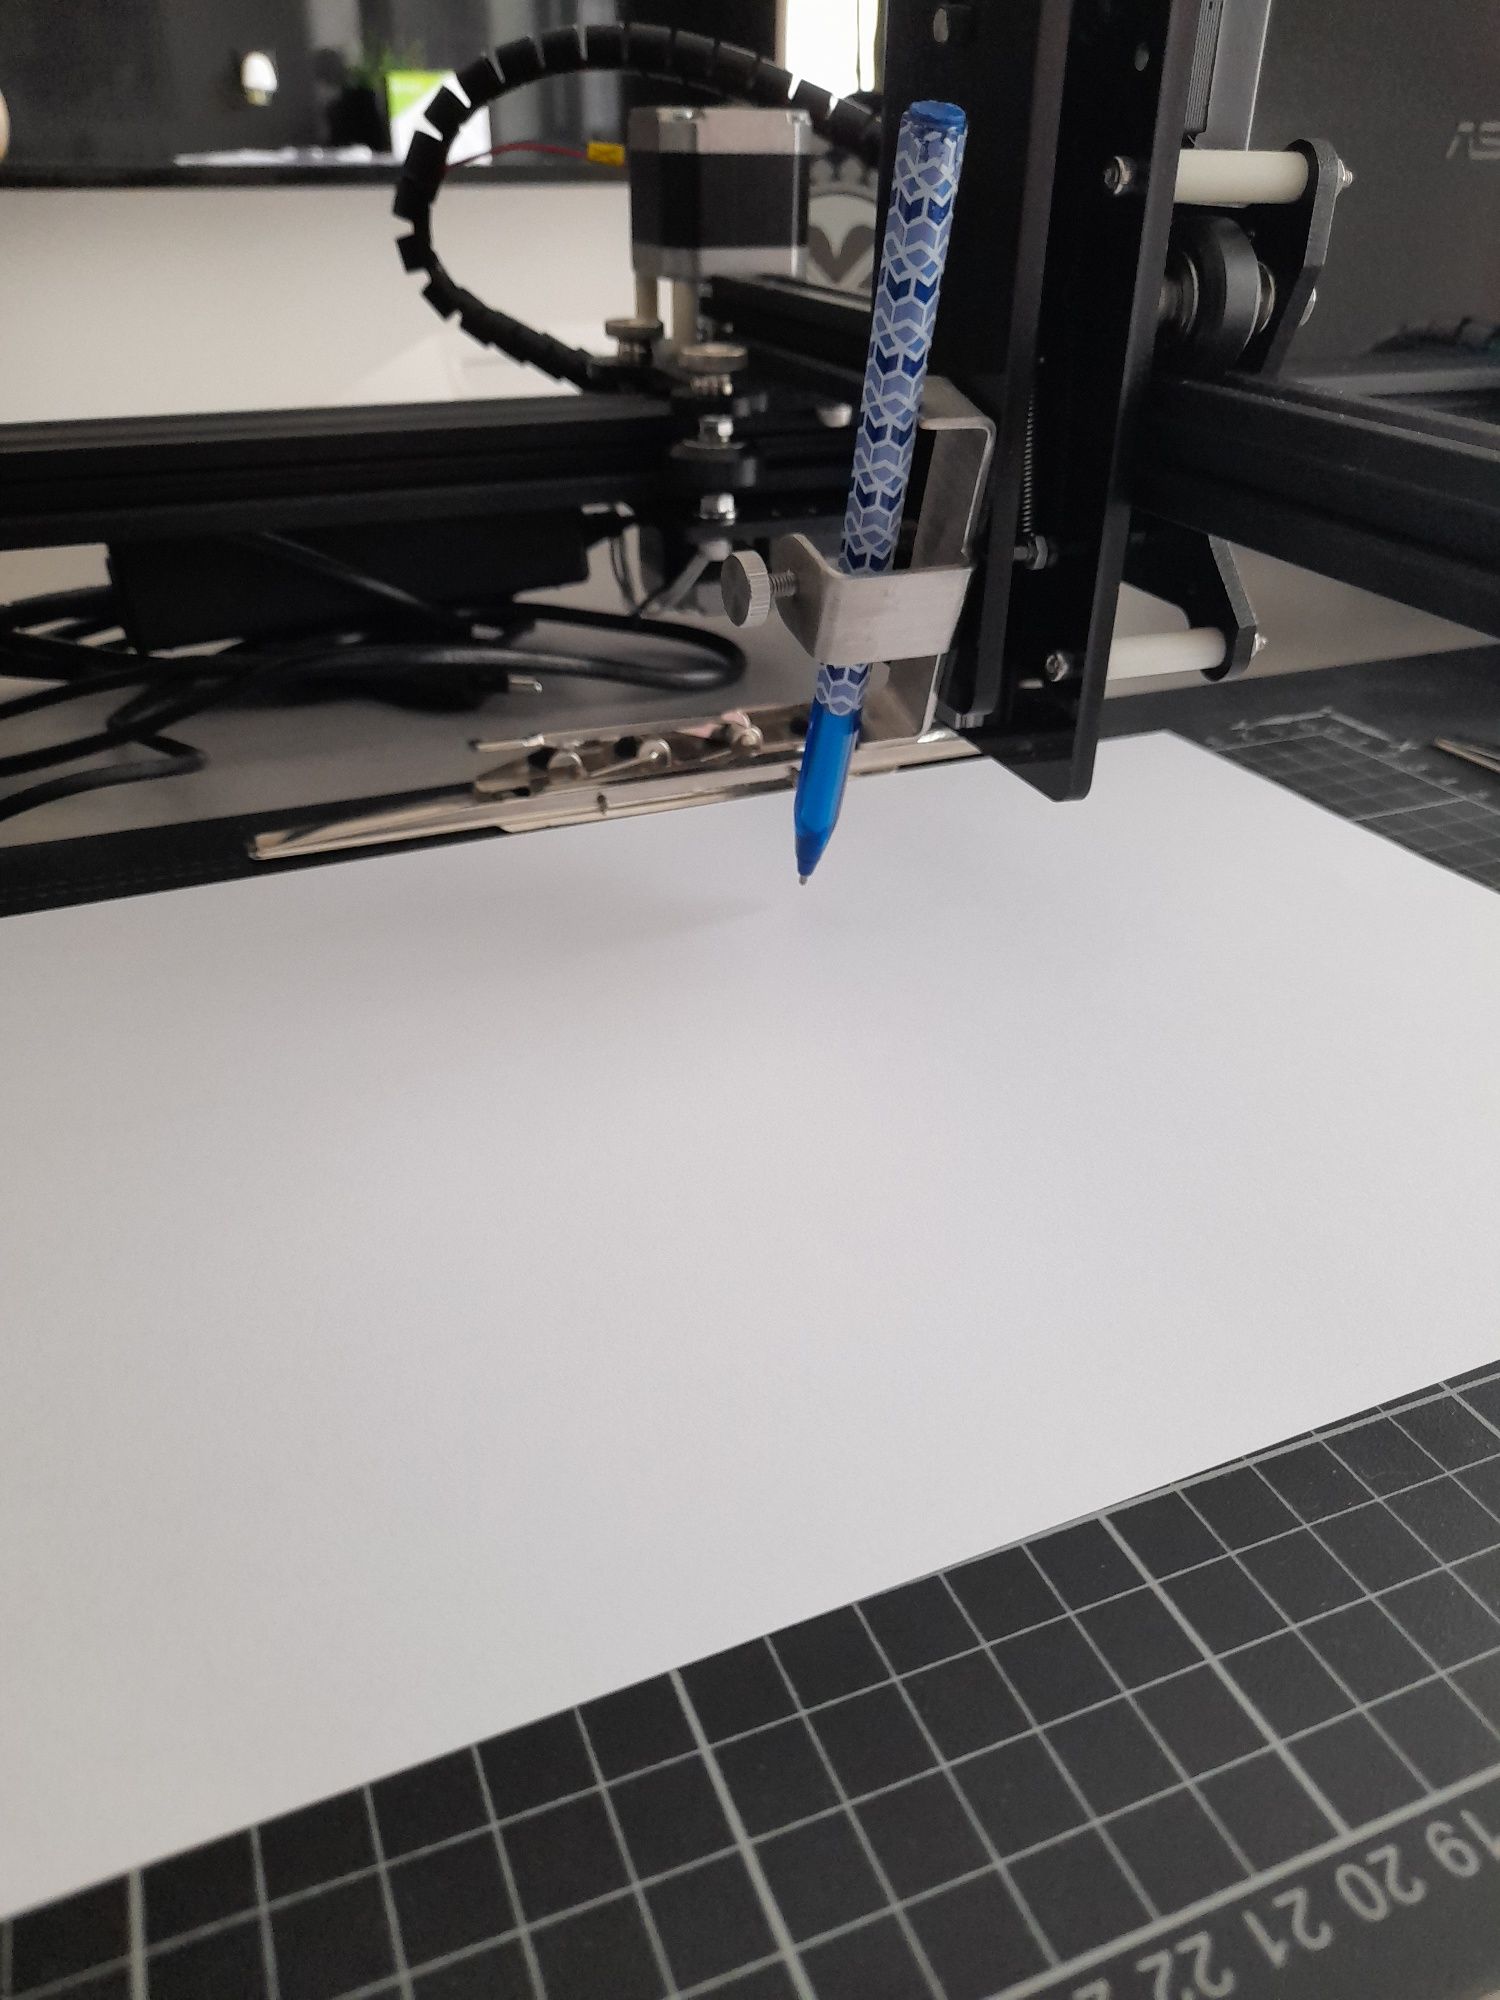 Plotter Impressora a Caneta ou Lápis